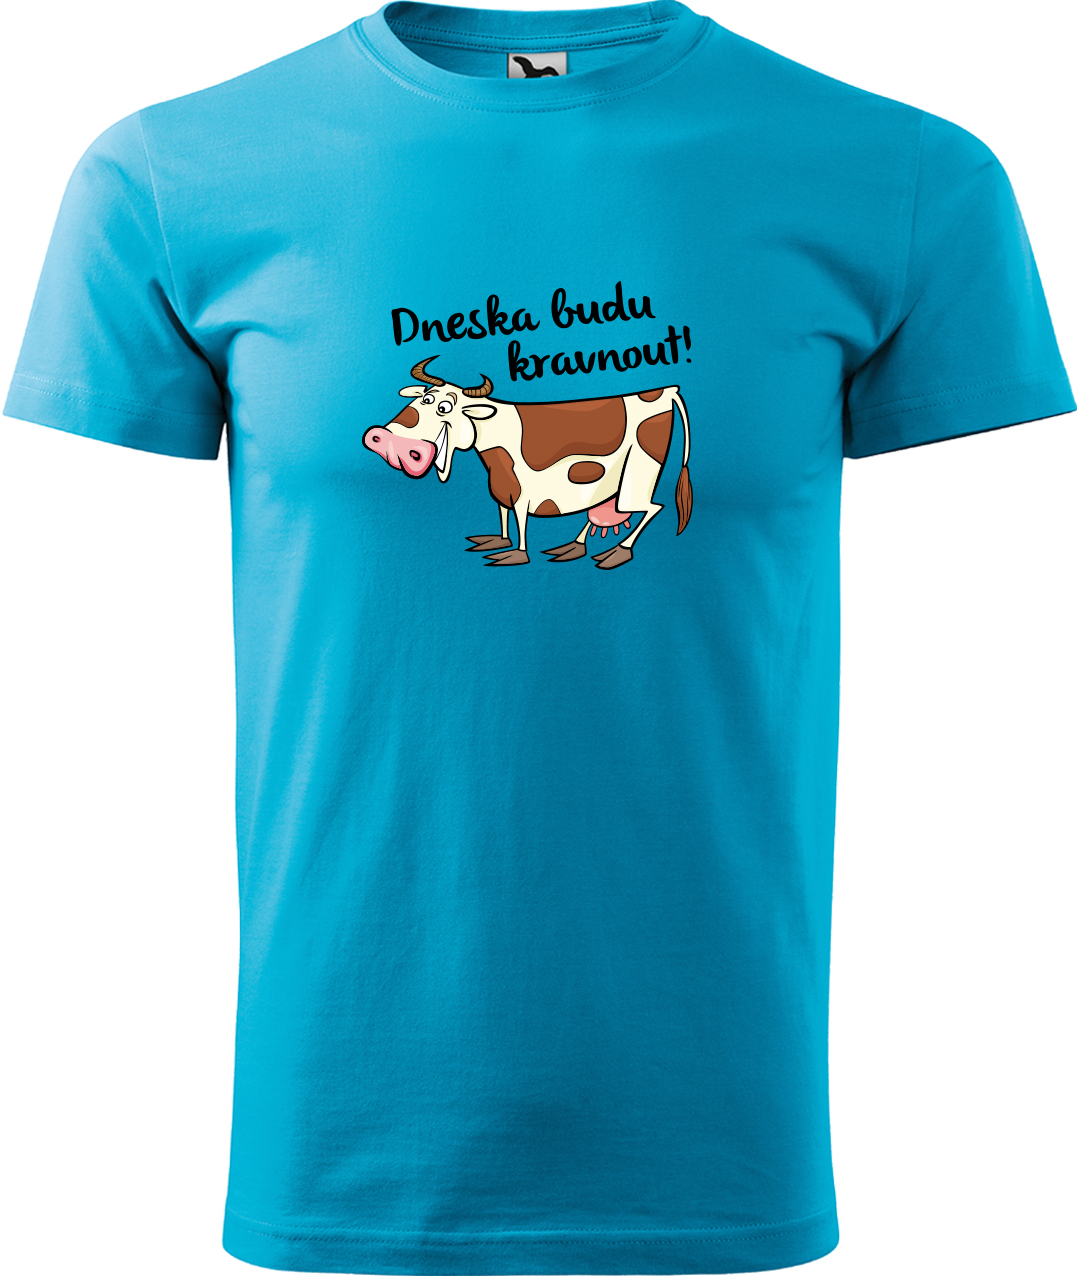 Pánské tričko s krávou - Dneska budu kravnout! Velikost: M, Barva: Tyrkysová (44), Střih: pánský